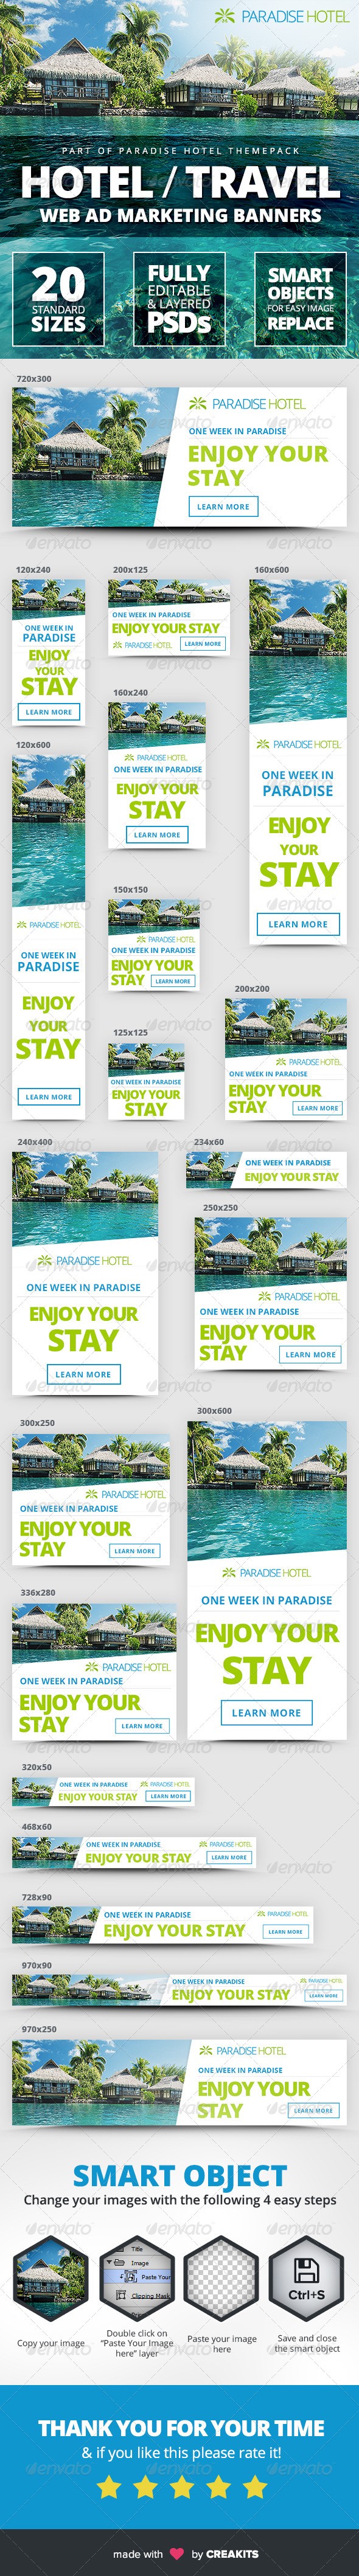 آگهی های / بنرهای بازاریابی تبلیغات هتل و سفر از طریق وب